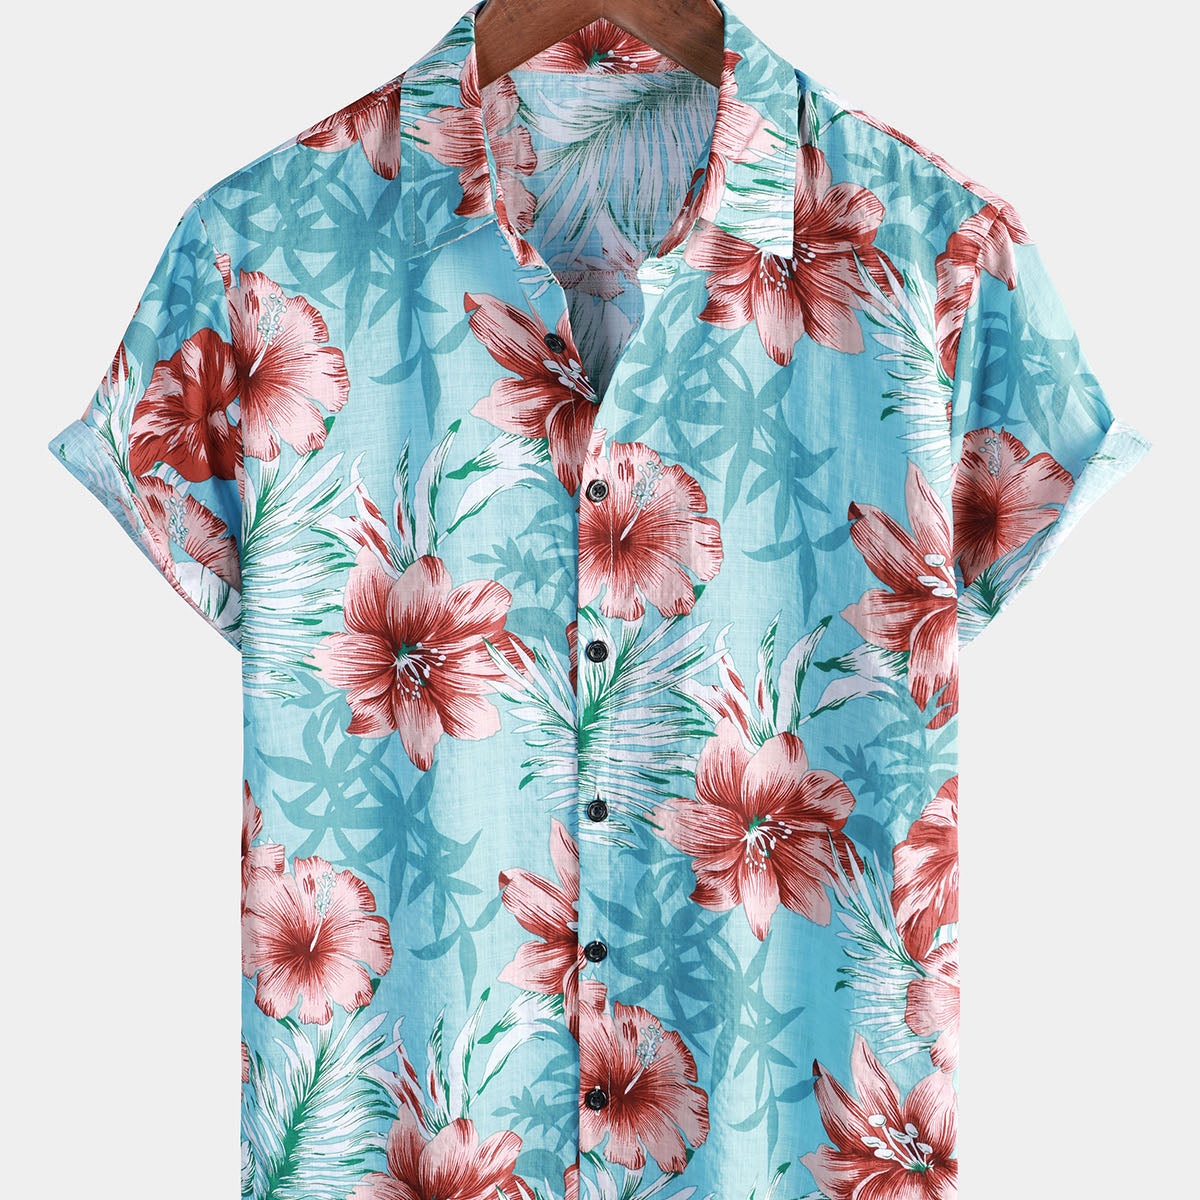 Chemise à manches courtes hawaïenne hawaïenne bouton tropical Hibiscus imprimé floral vacances plage bleu manches courtes